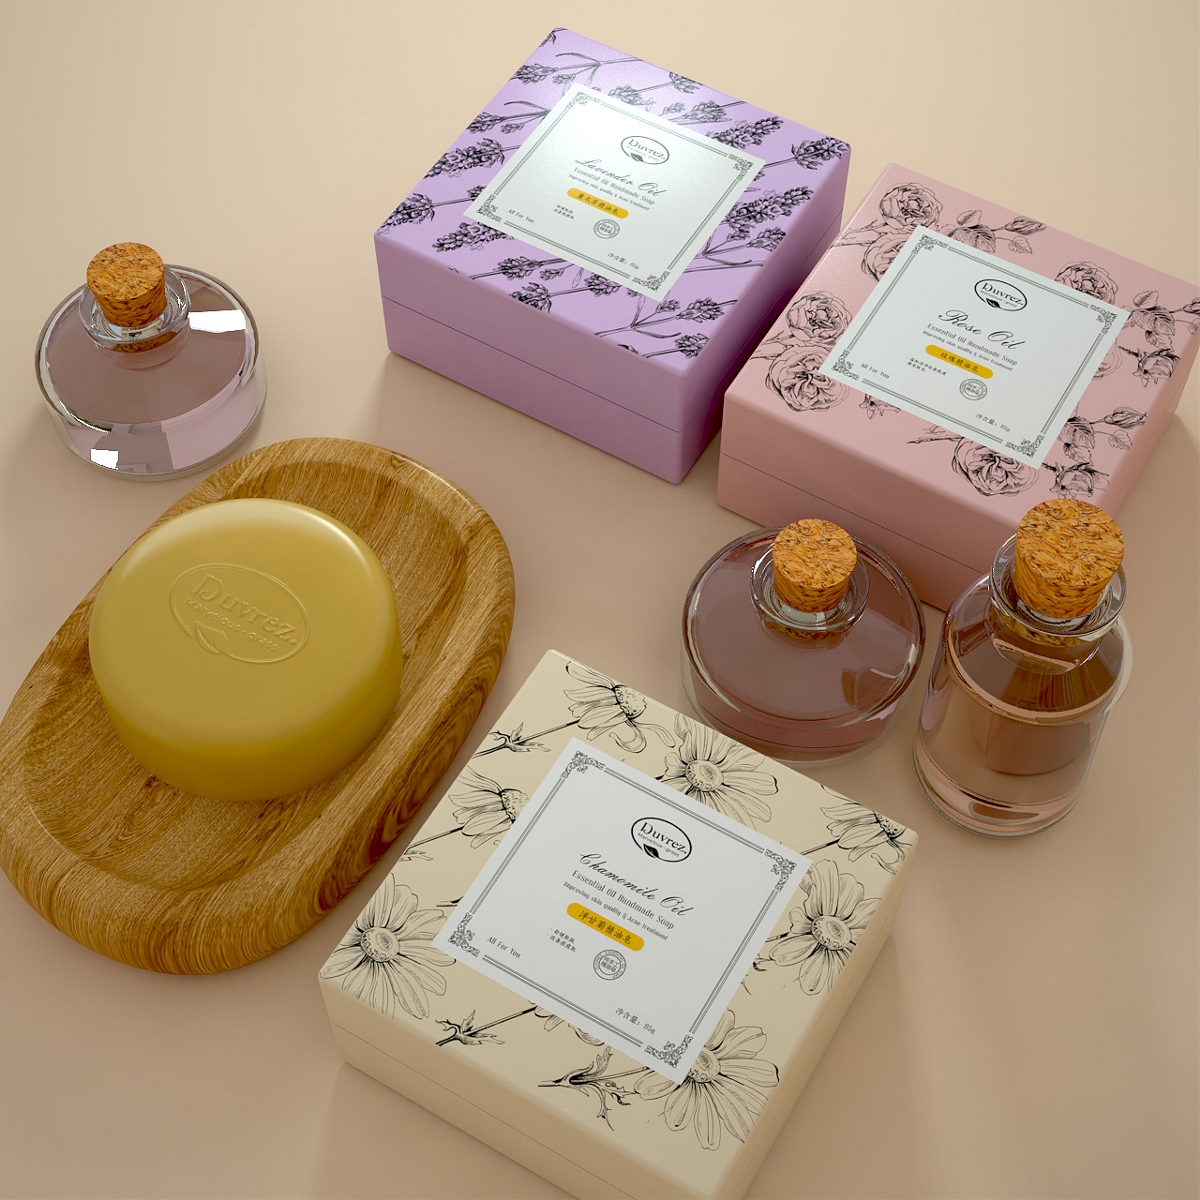 手工皂 精油皂包装设计 沐浴品牌设计 产品包装系列设计